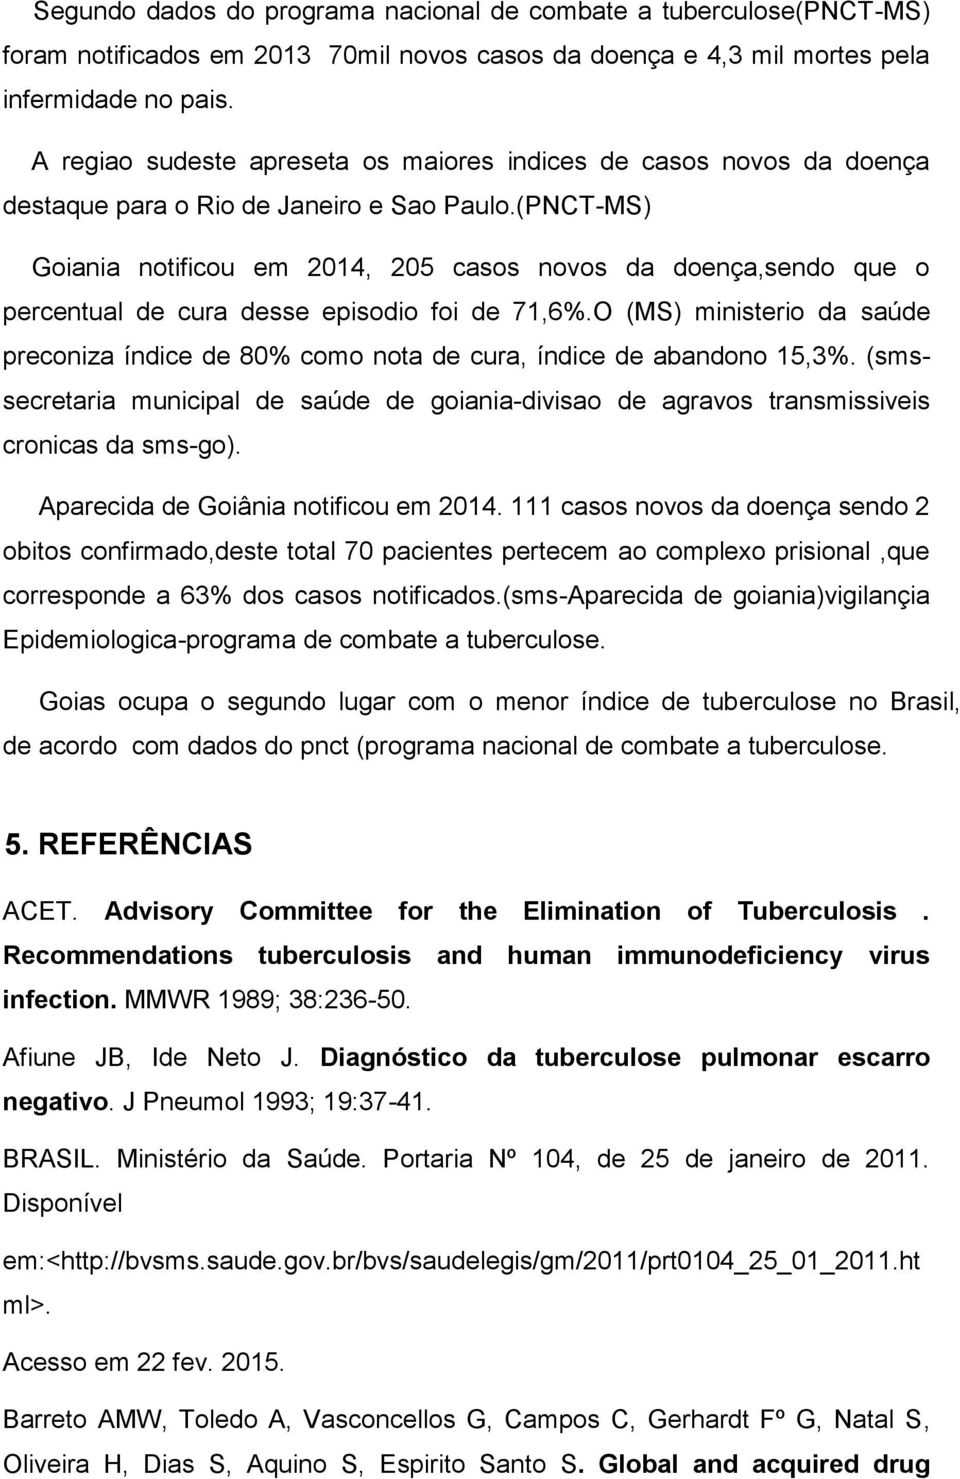 (PNCT-MS) Goiania notificou em 2014, 205 casos novos da doença,sendo que o percentual de cura desse episodio foi de 71,6%.